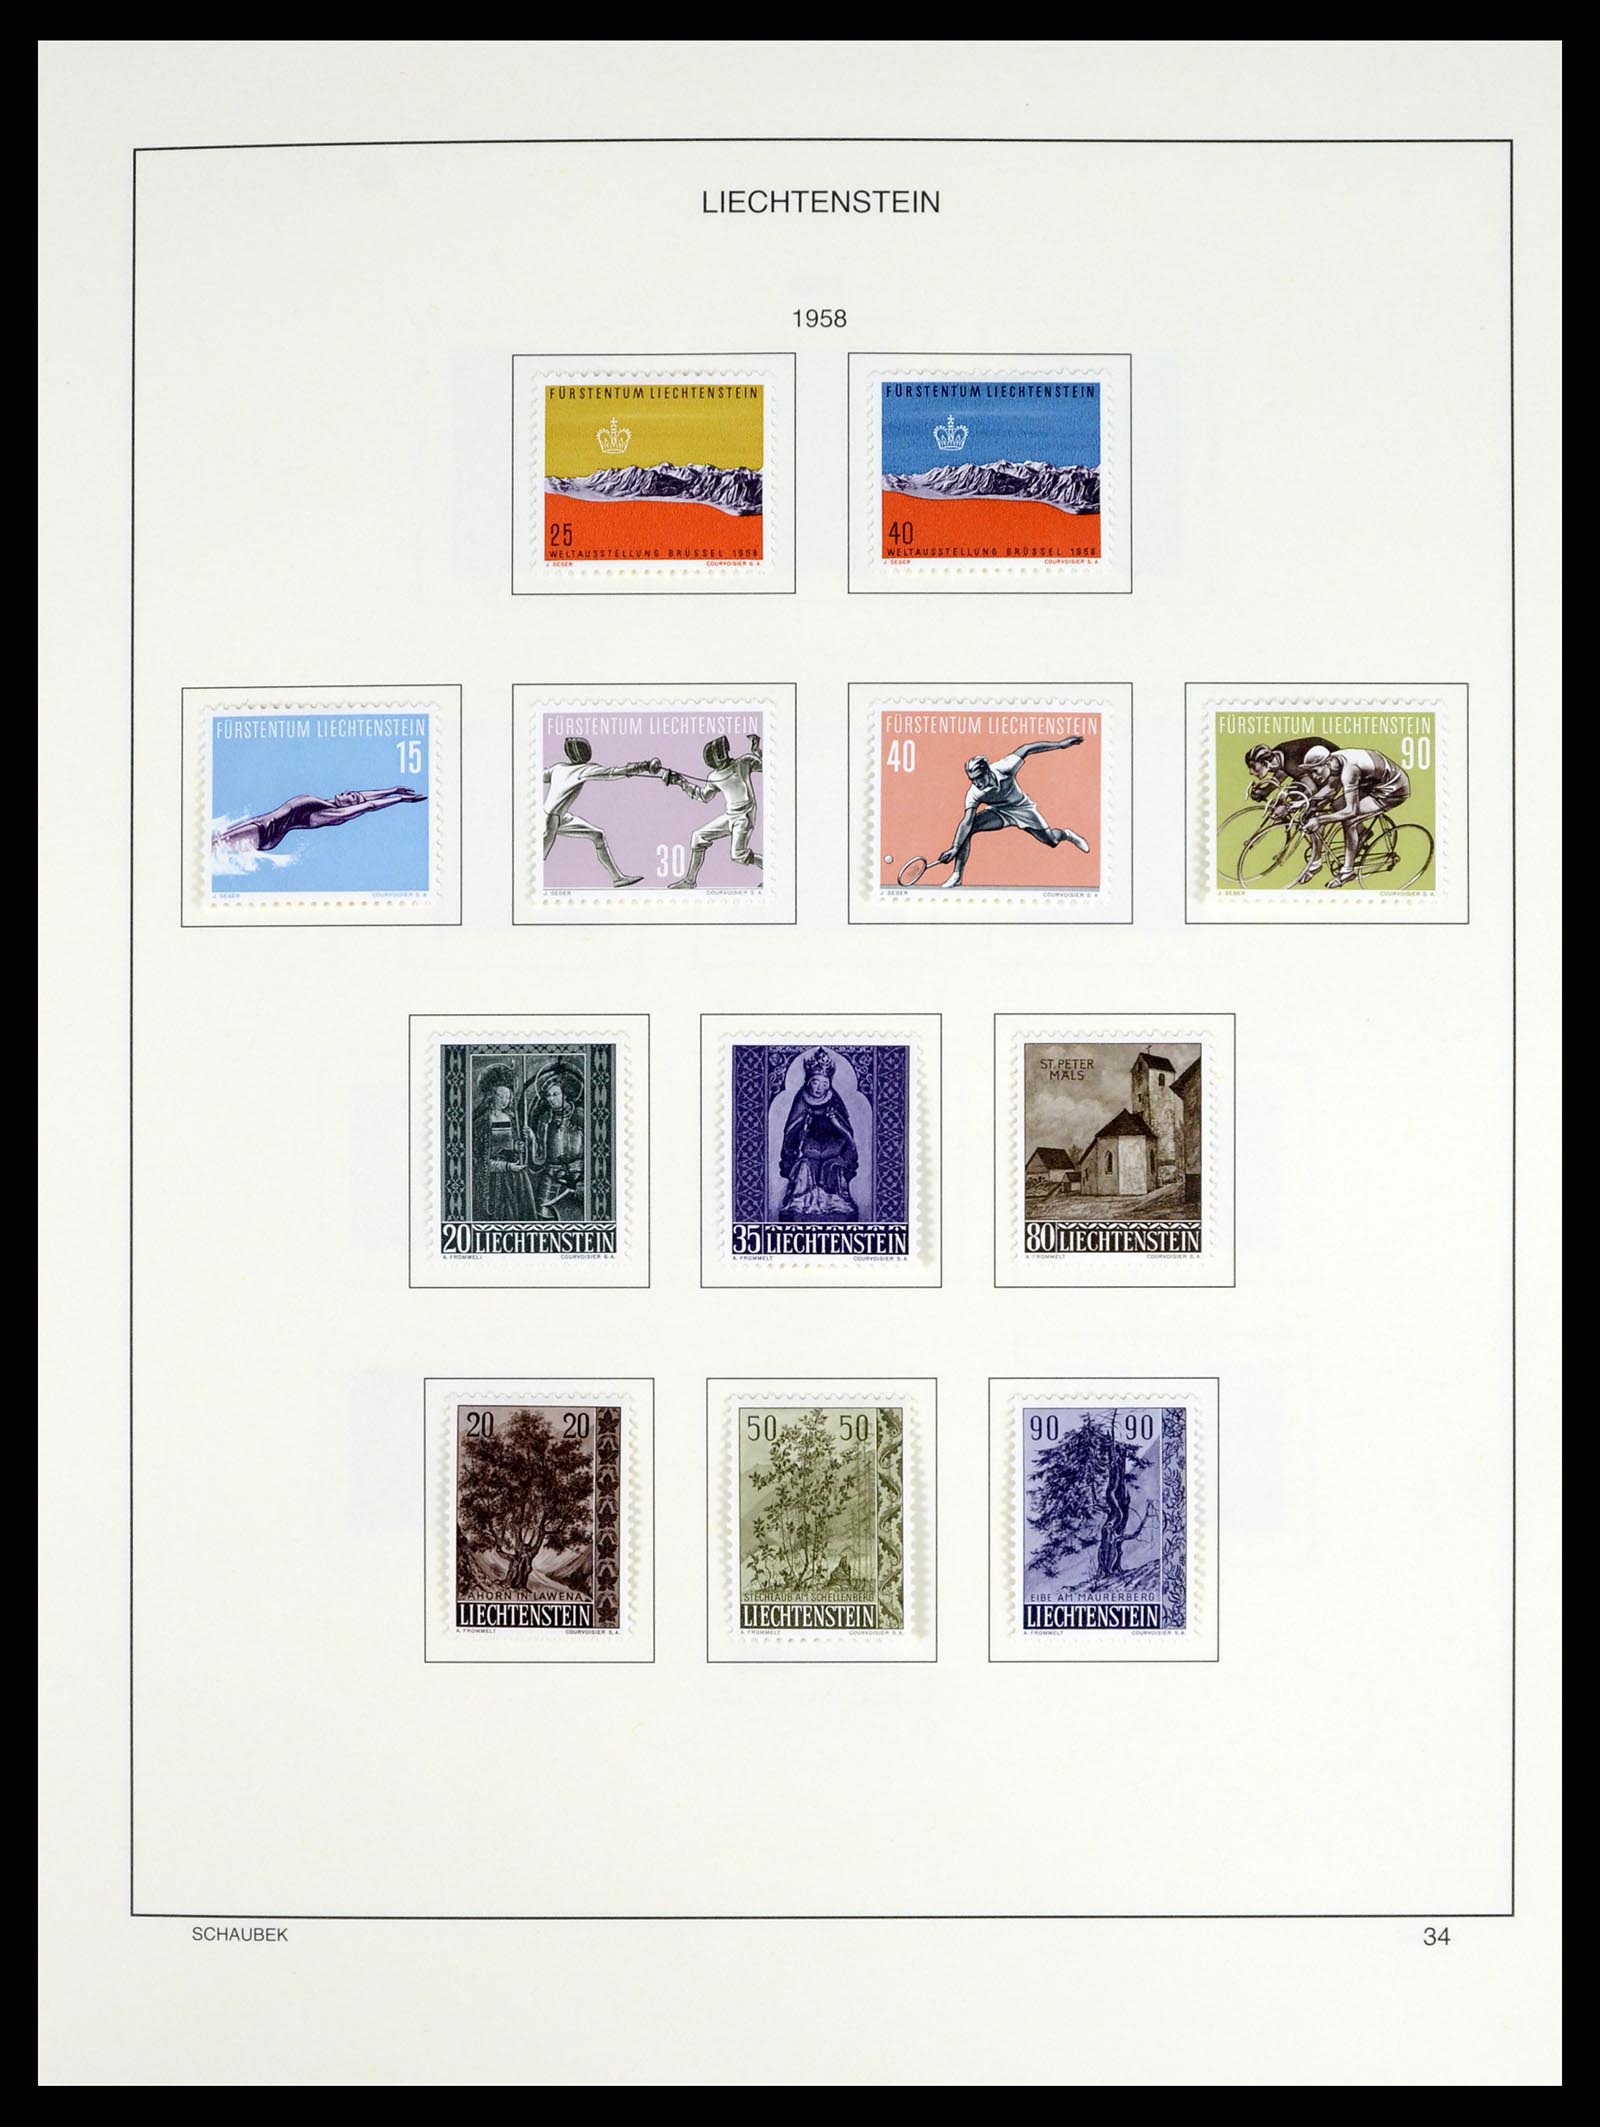 37547 039 - Postzegelverzameling 37547 Liechtenstein 1912-2011.